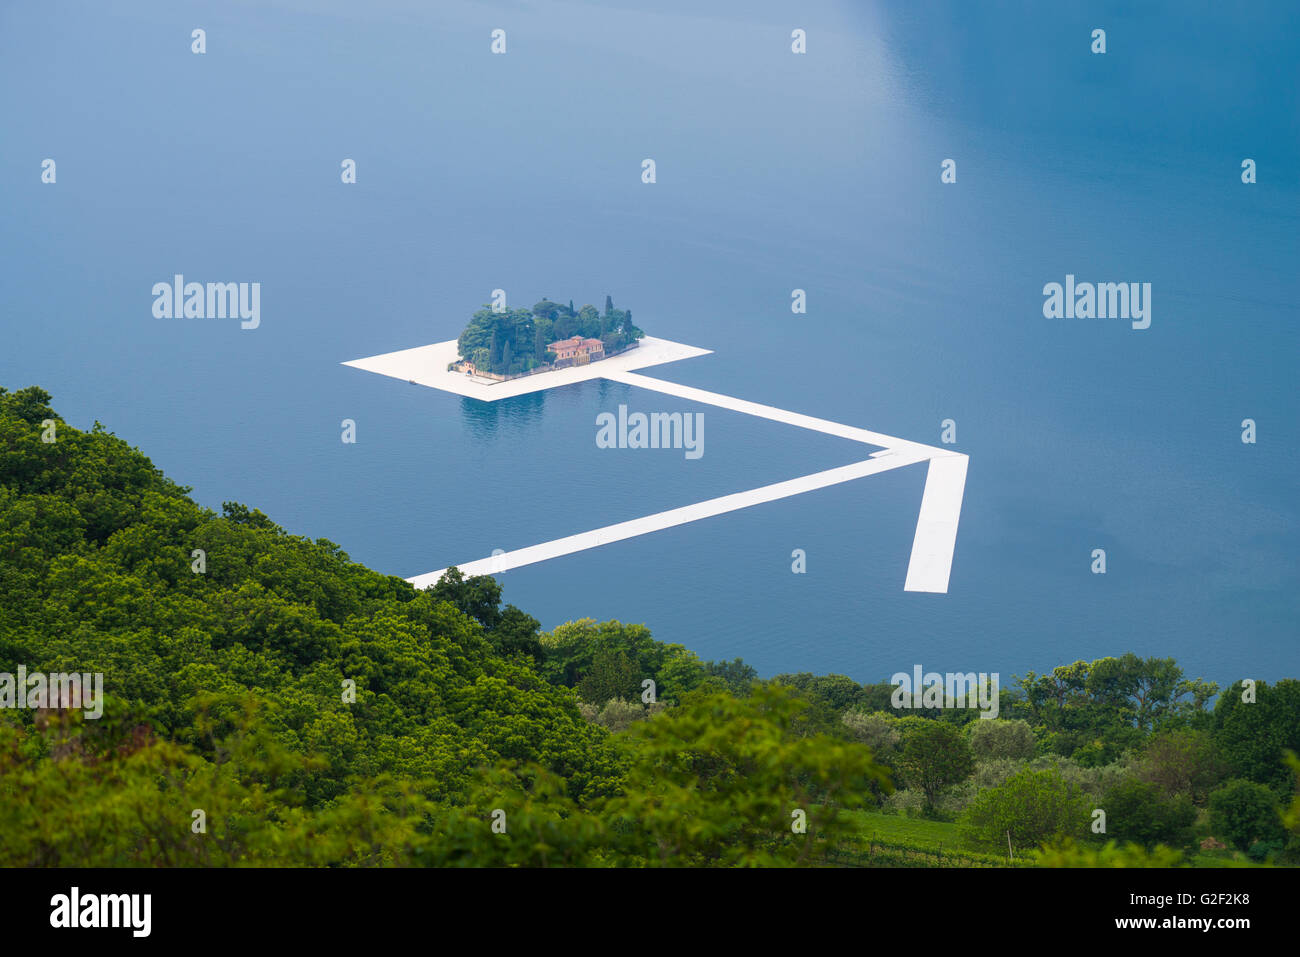 Nuoto pontons sotto forma di un gigantesco freccia in corrispondenza di San Paolo isola per Christo il progetto 'i pontili galleggianti' sul lago d'Iseo, Italia Foto Stock